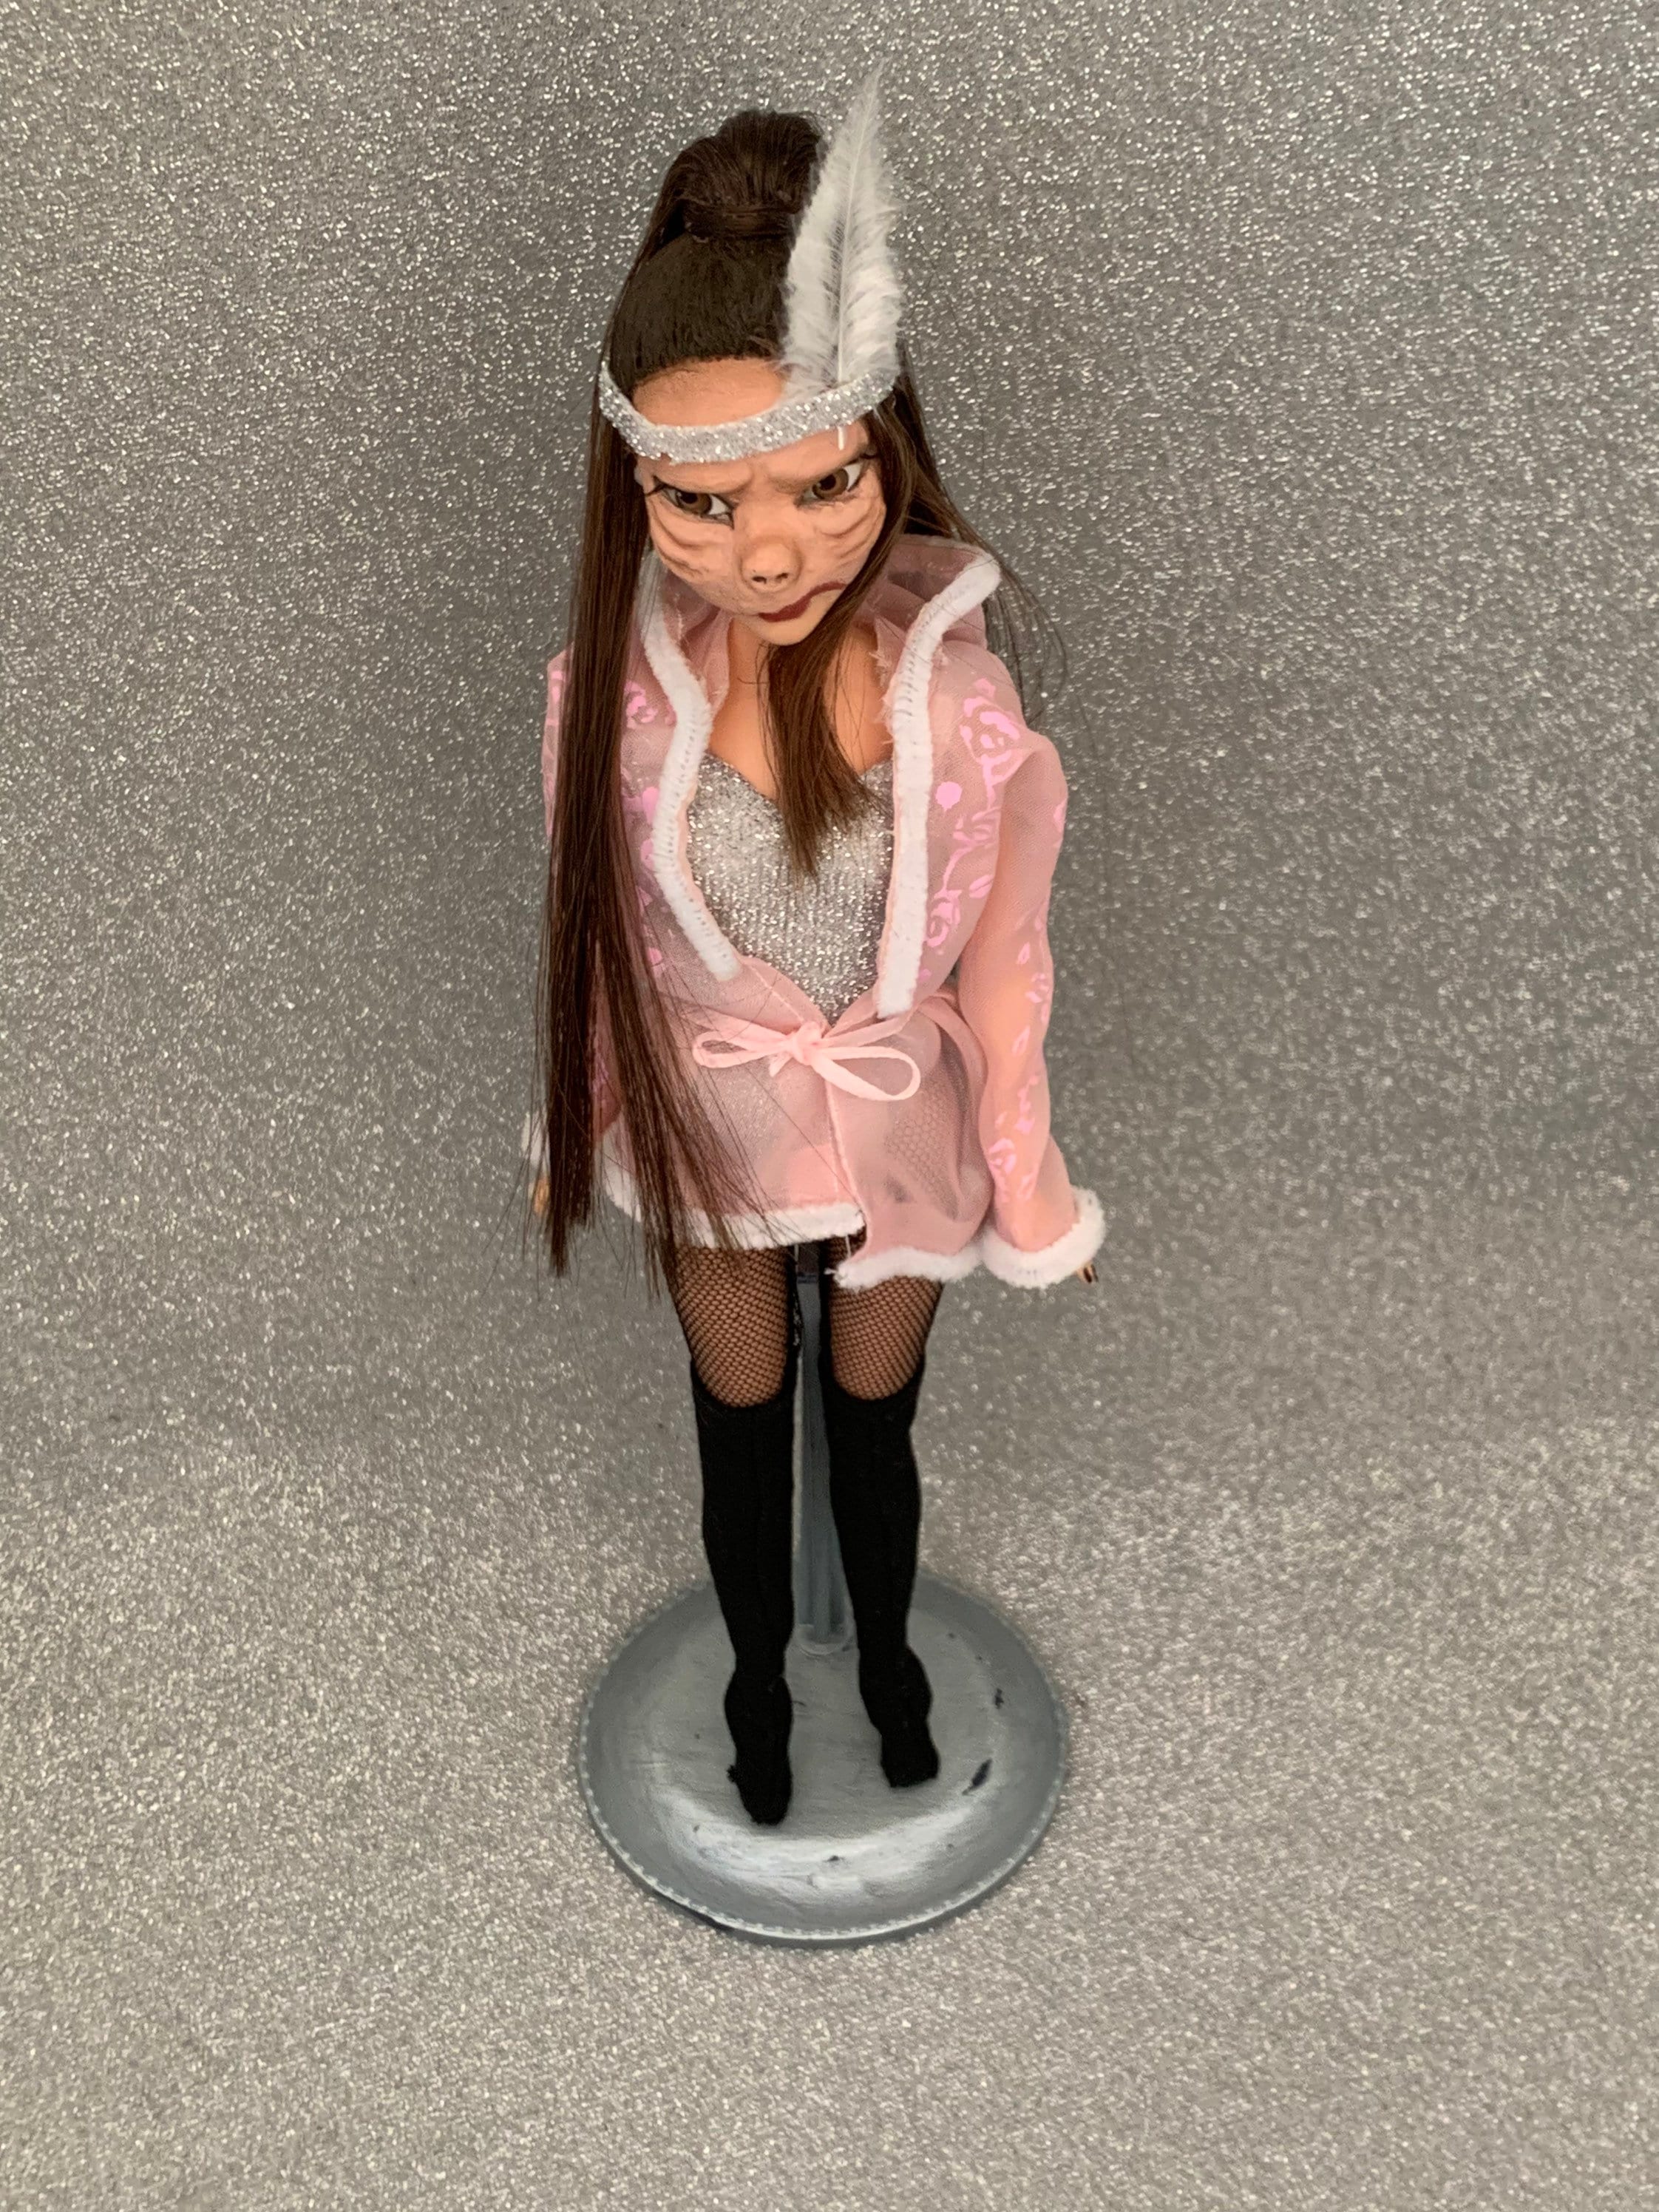 Buy Ariana Grande Doll/ Barbie Online in - Etsy